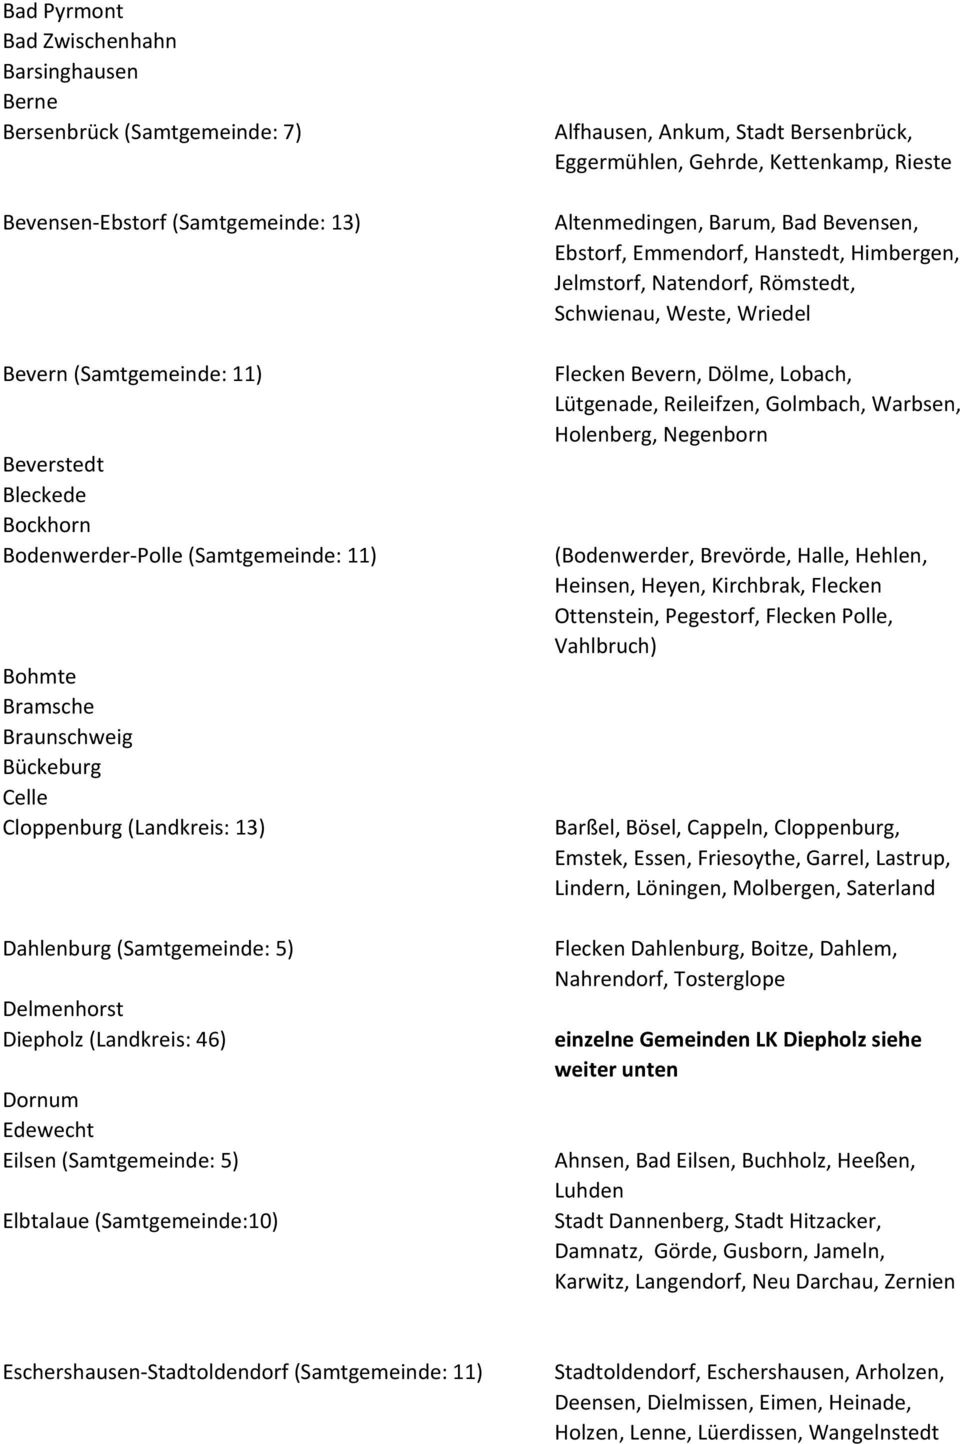 Elbtalaue (Samtgemeinde:10) Alfhausen, Ankum, Stadt Bersenbrück, Eggermühlen, Gehrde, Kettenkamp, Rieste Altenmedingen, Barum, Bad Bevensen, Ebstorf, Emmendorf, Hanstedt, Himbergen, Jelmstorf,